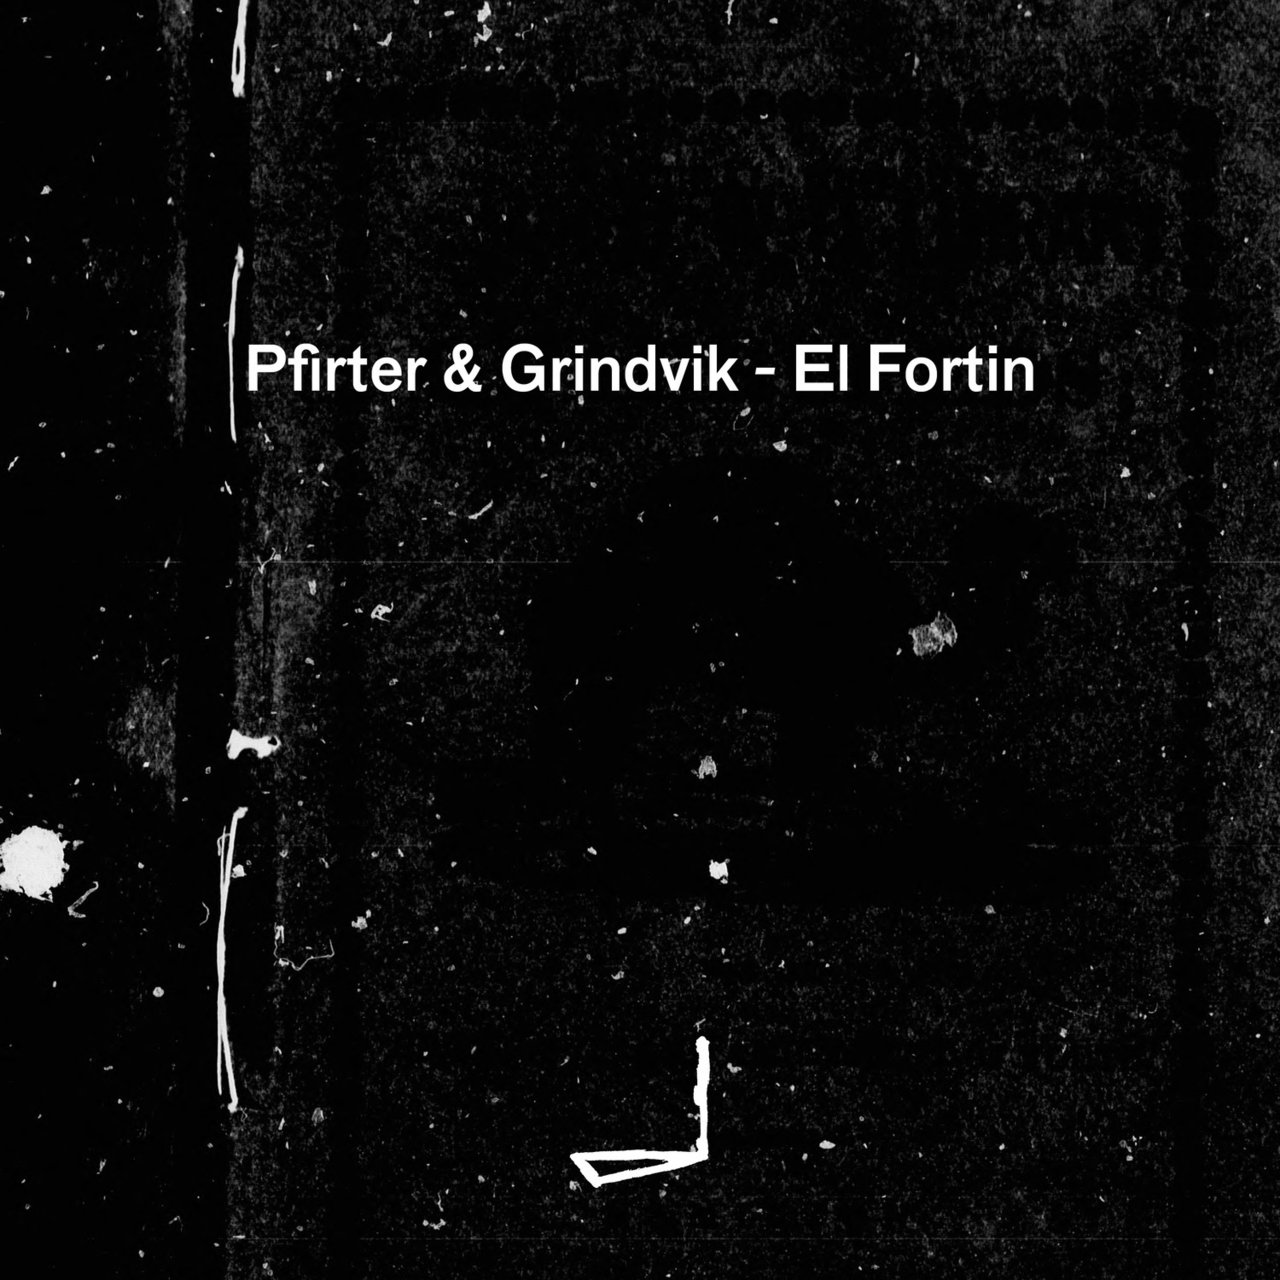 image cover: Pfirter & Grindvik - El Fortin / Leyla Records